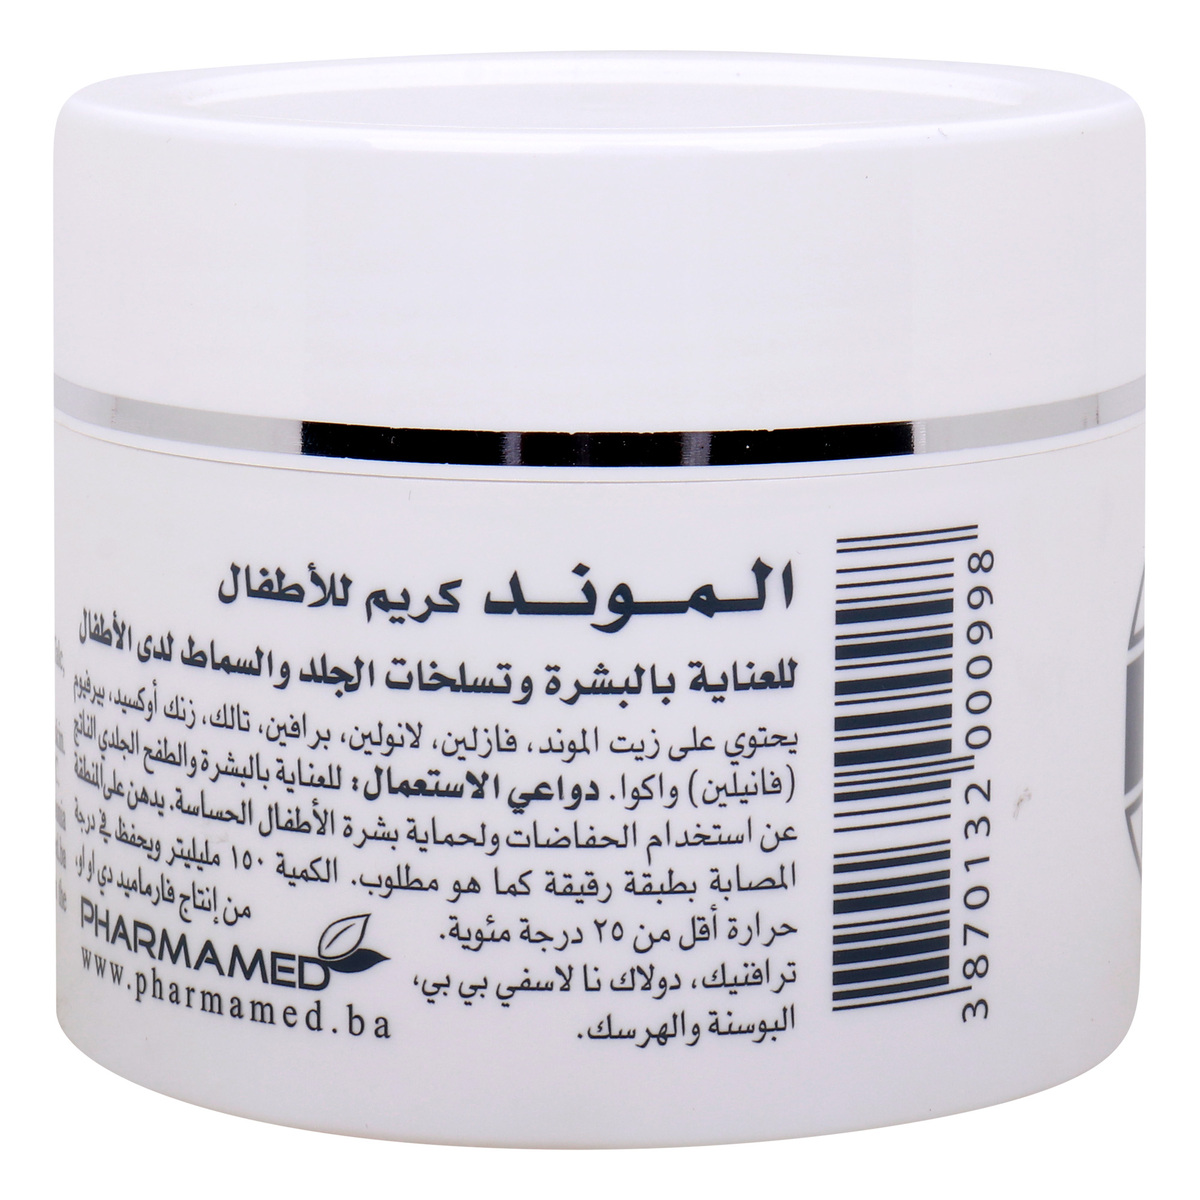 Pharmamed Almond Baby Skin Care Cream 150 ml